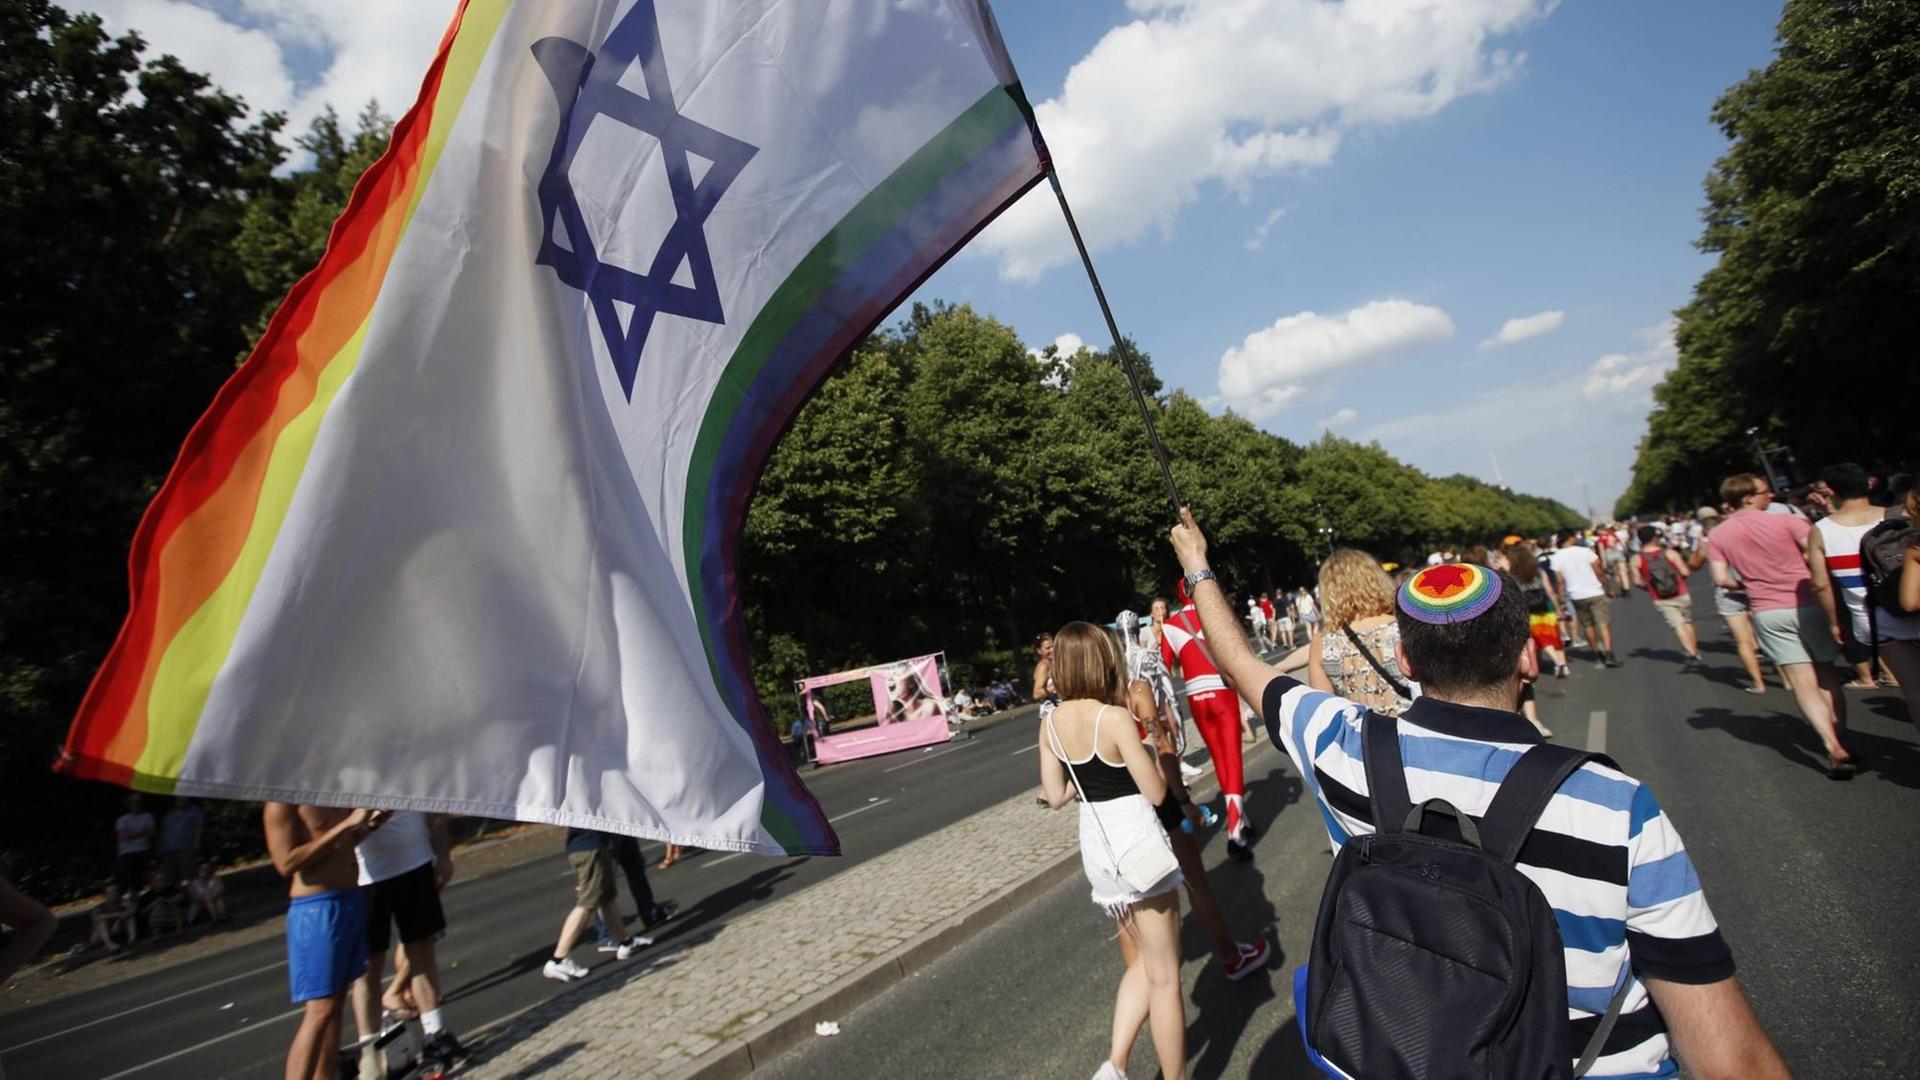 Jüdischer Teilnehmer auf dem CSD-Berlin mit regenbogenfarbener Kippa und Fahne